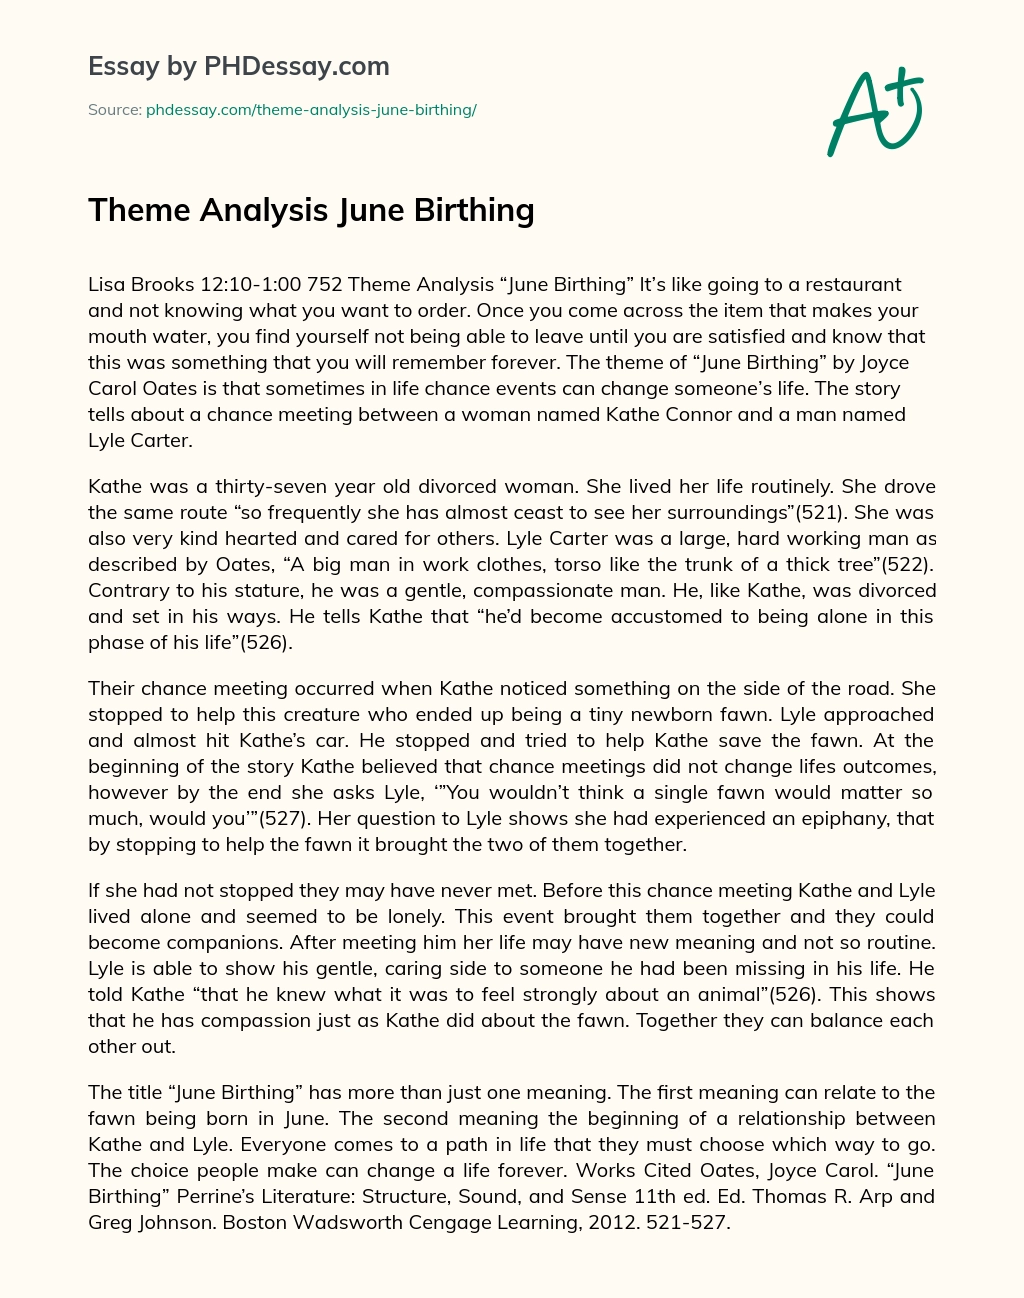 Theme Analysis June Birthing essay